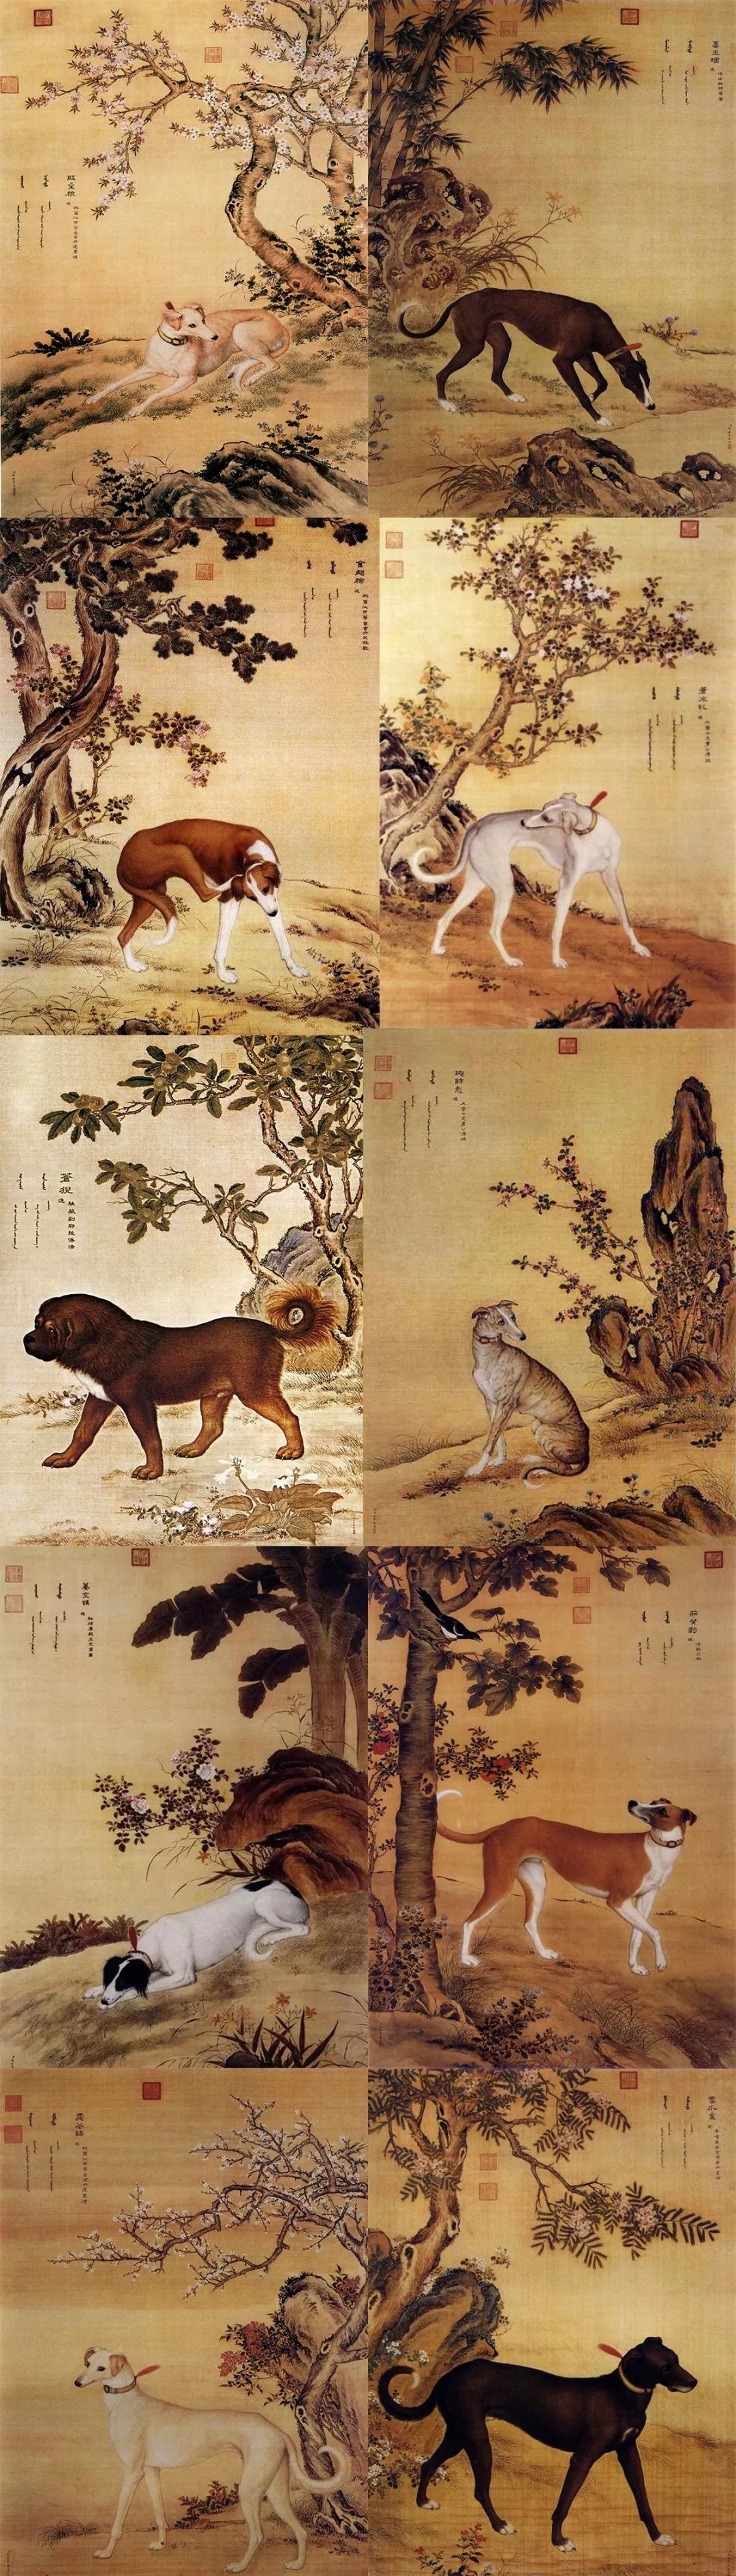 郎世宁的十犬图有几幅图片